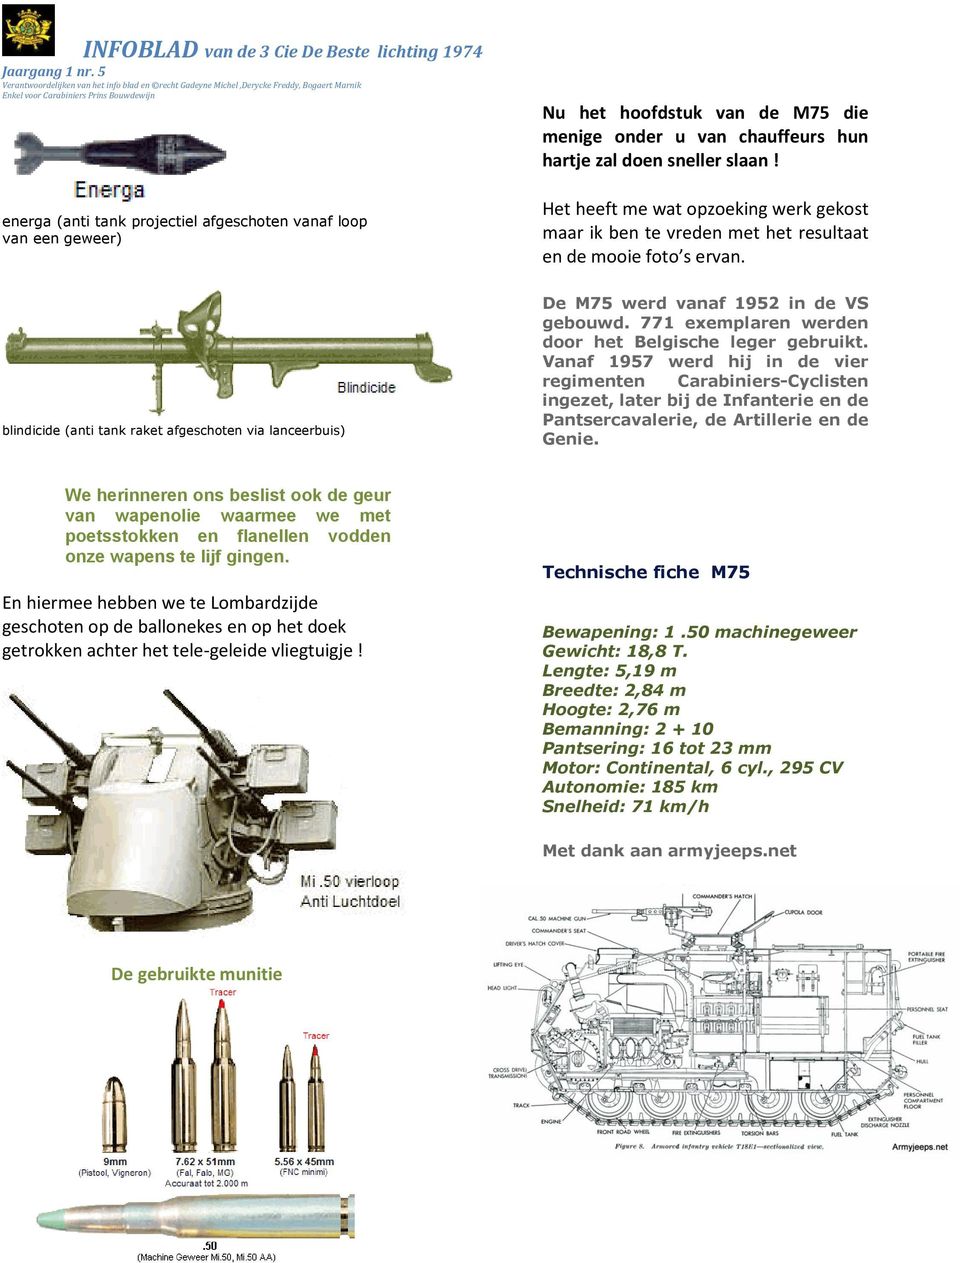 blindicide (anti tank raket afgeschoten via lanceerbuis) De M75 werd vanaf 1952 in de VS gebouwd. 771 exemplaren werden door het Belgische leger gebruikt.